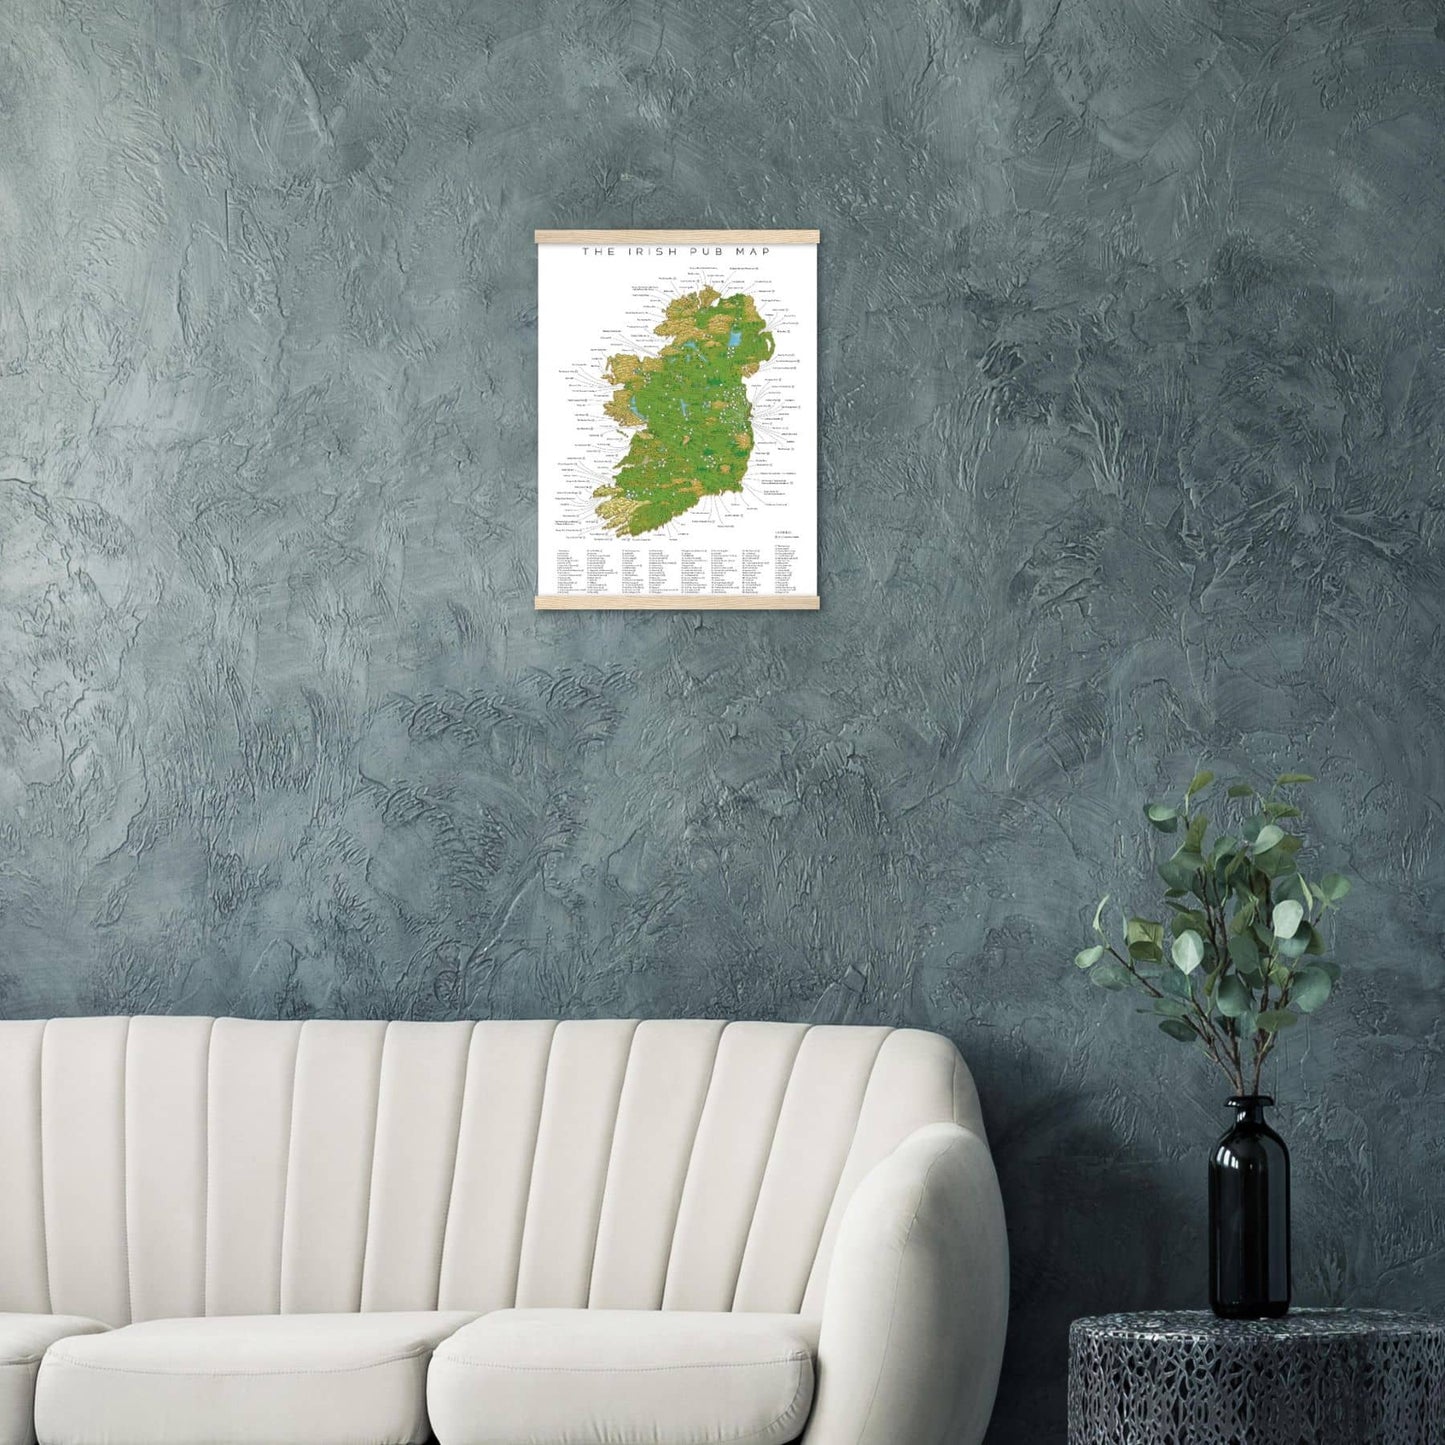 The Irish Pub Map